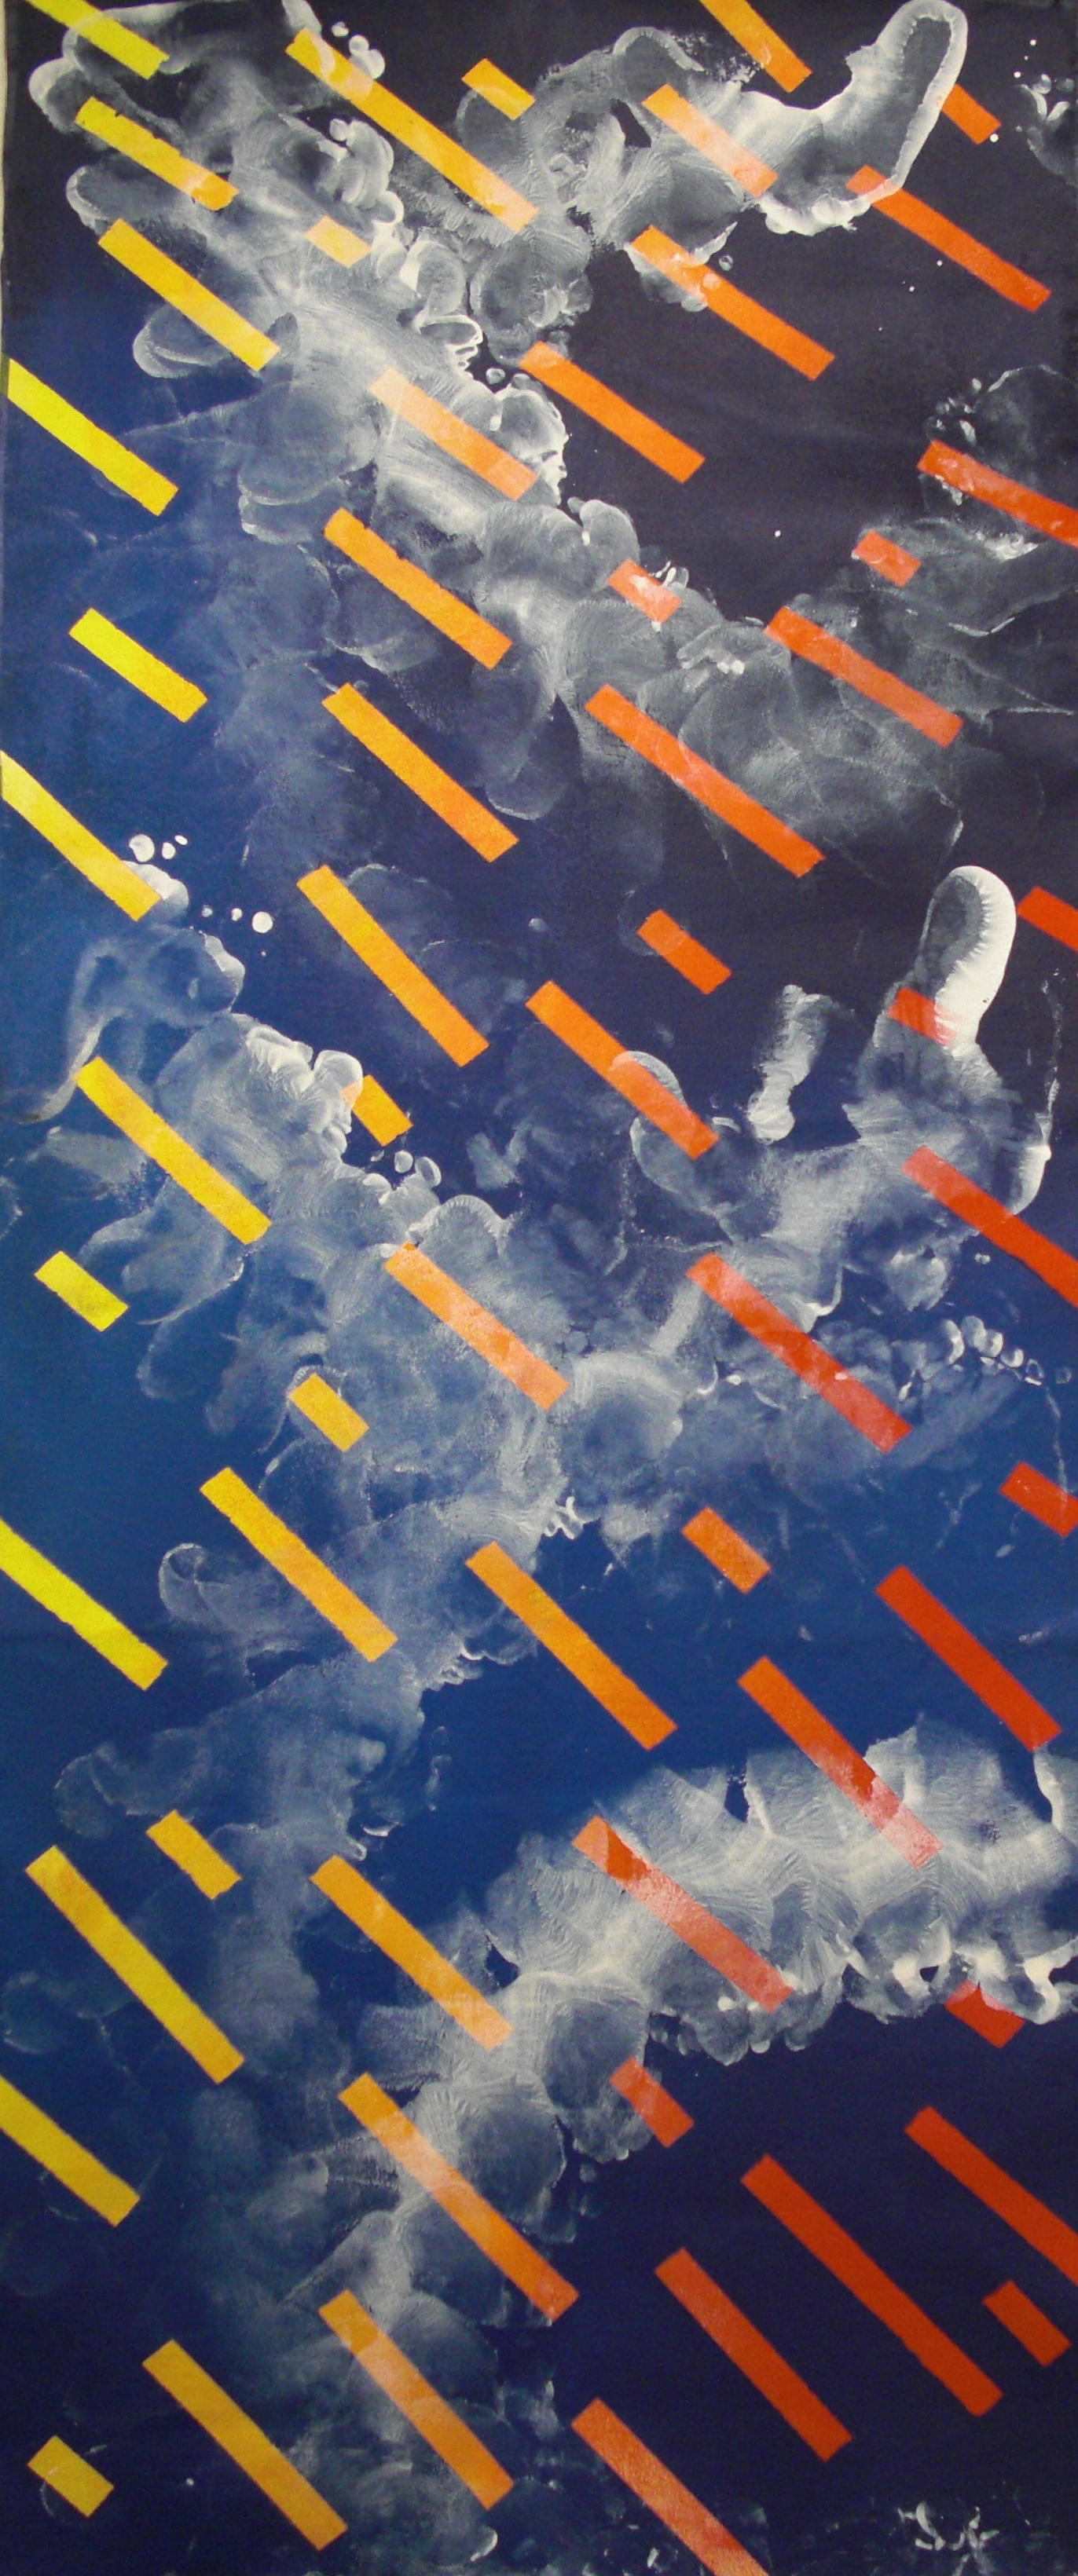 Dance #4, Acrylic on canvas, 2'x6', 2010-2011